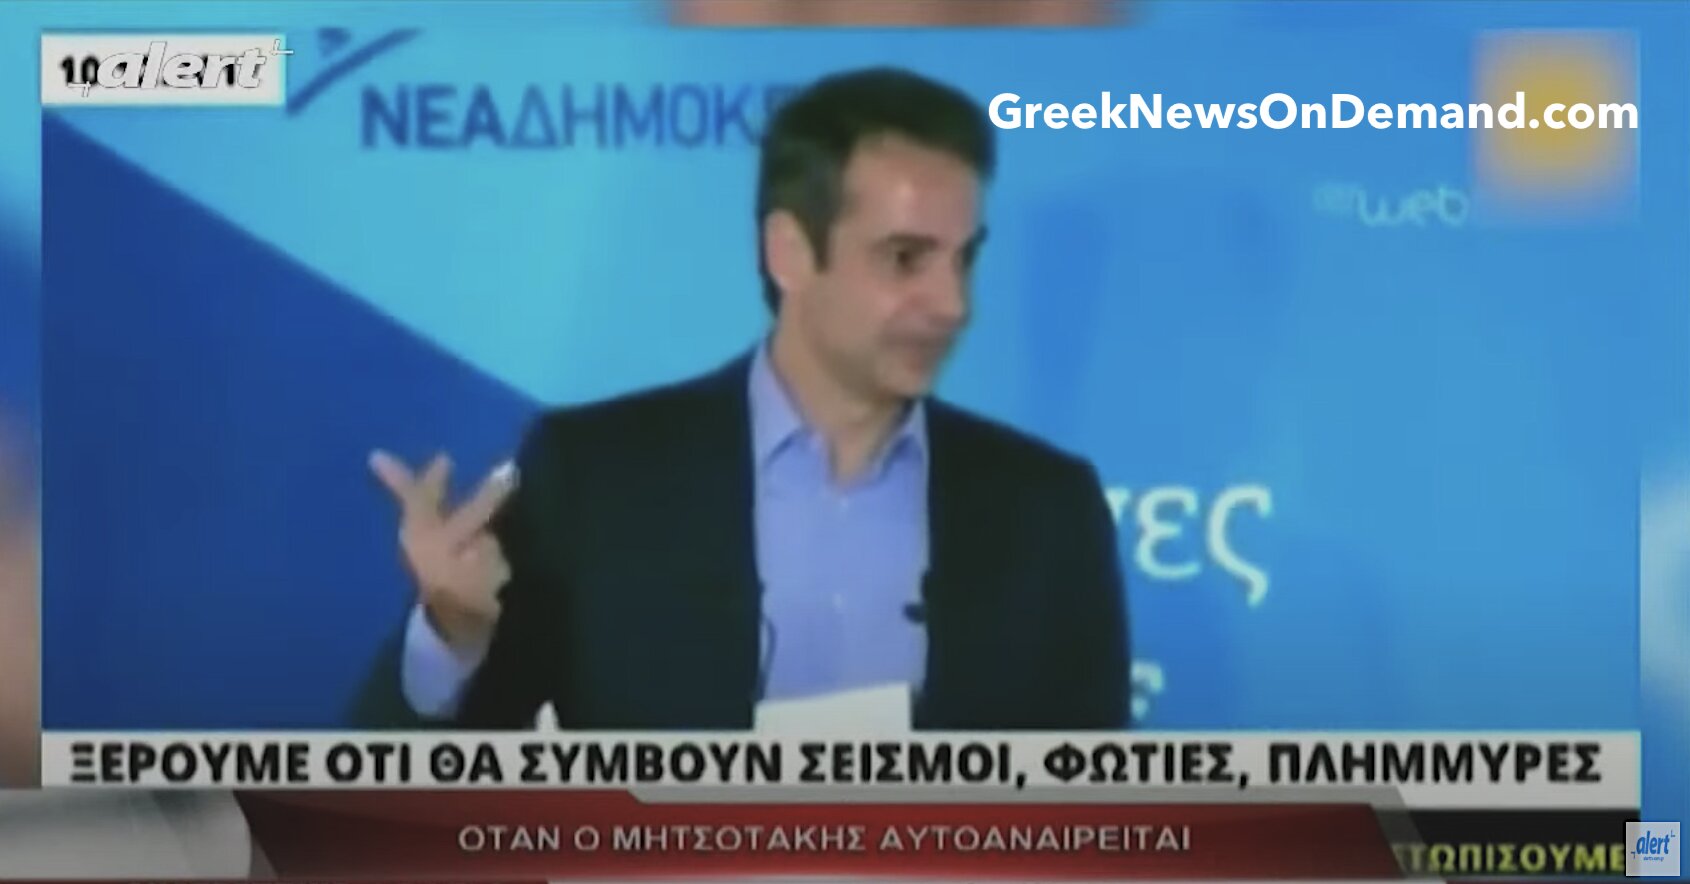 Όταν ο Μητσοτάκης το ’17, με προηγούμενη γνώση, προανήγγελλε το κακό που έμελλε να σαρώσει όλη την Ελλάδα: «Ξέρουμε μετά βεβαιότητος ότι θα συμβούν σεισμοί, φωτιές και πλημμύρες»…!!!